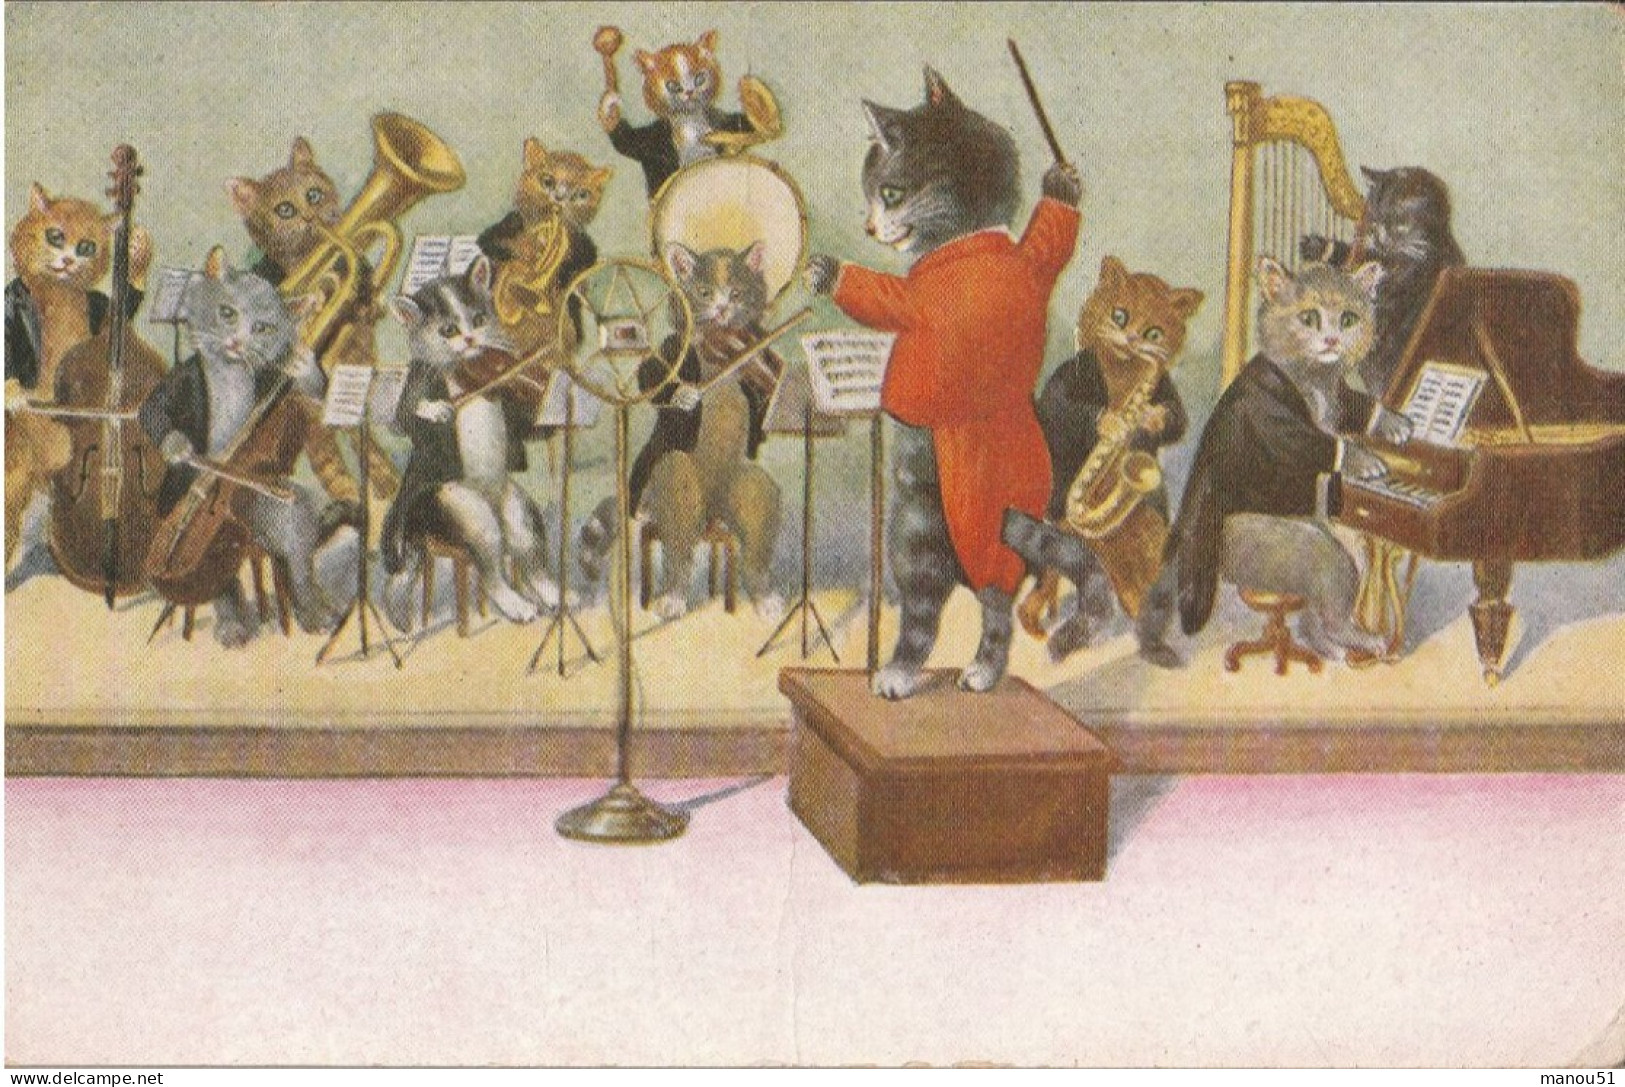 CHATS Habillés - L'orchestre - Animali Abbigliati